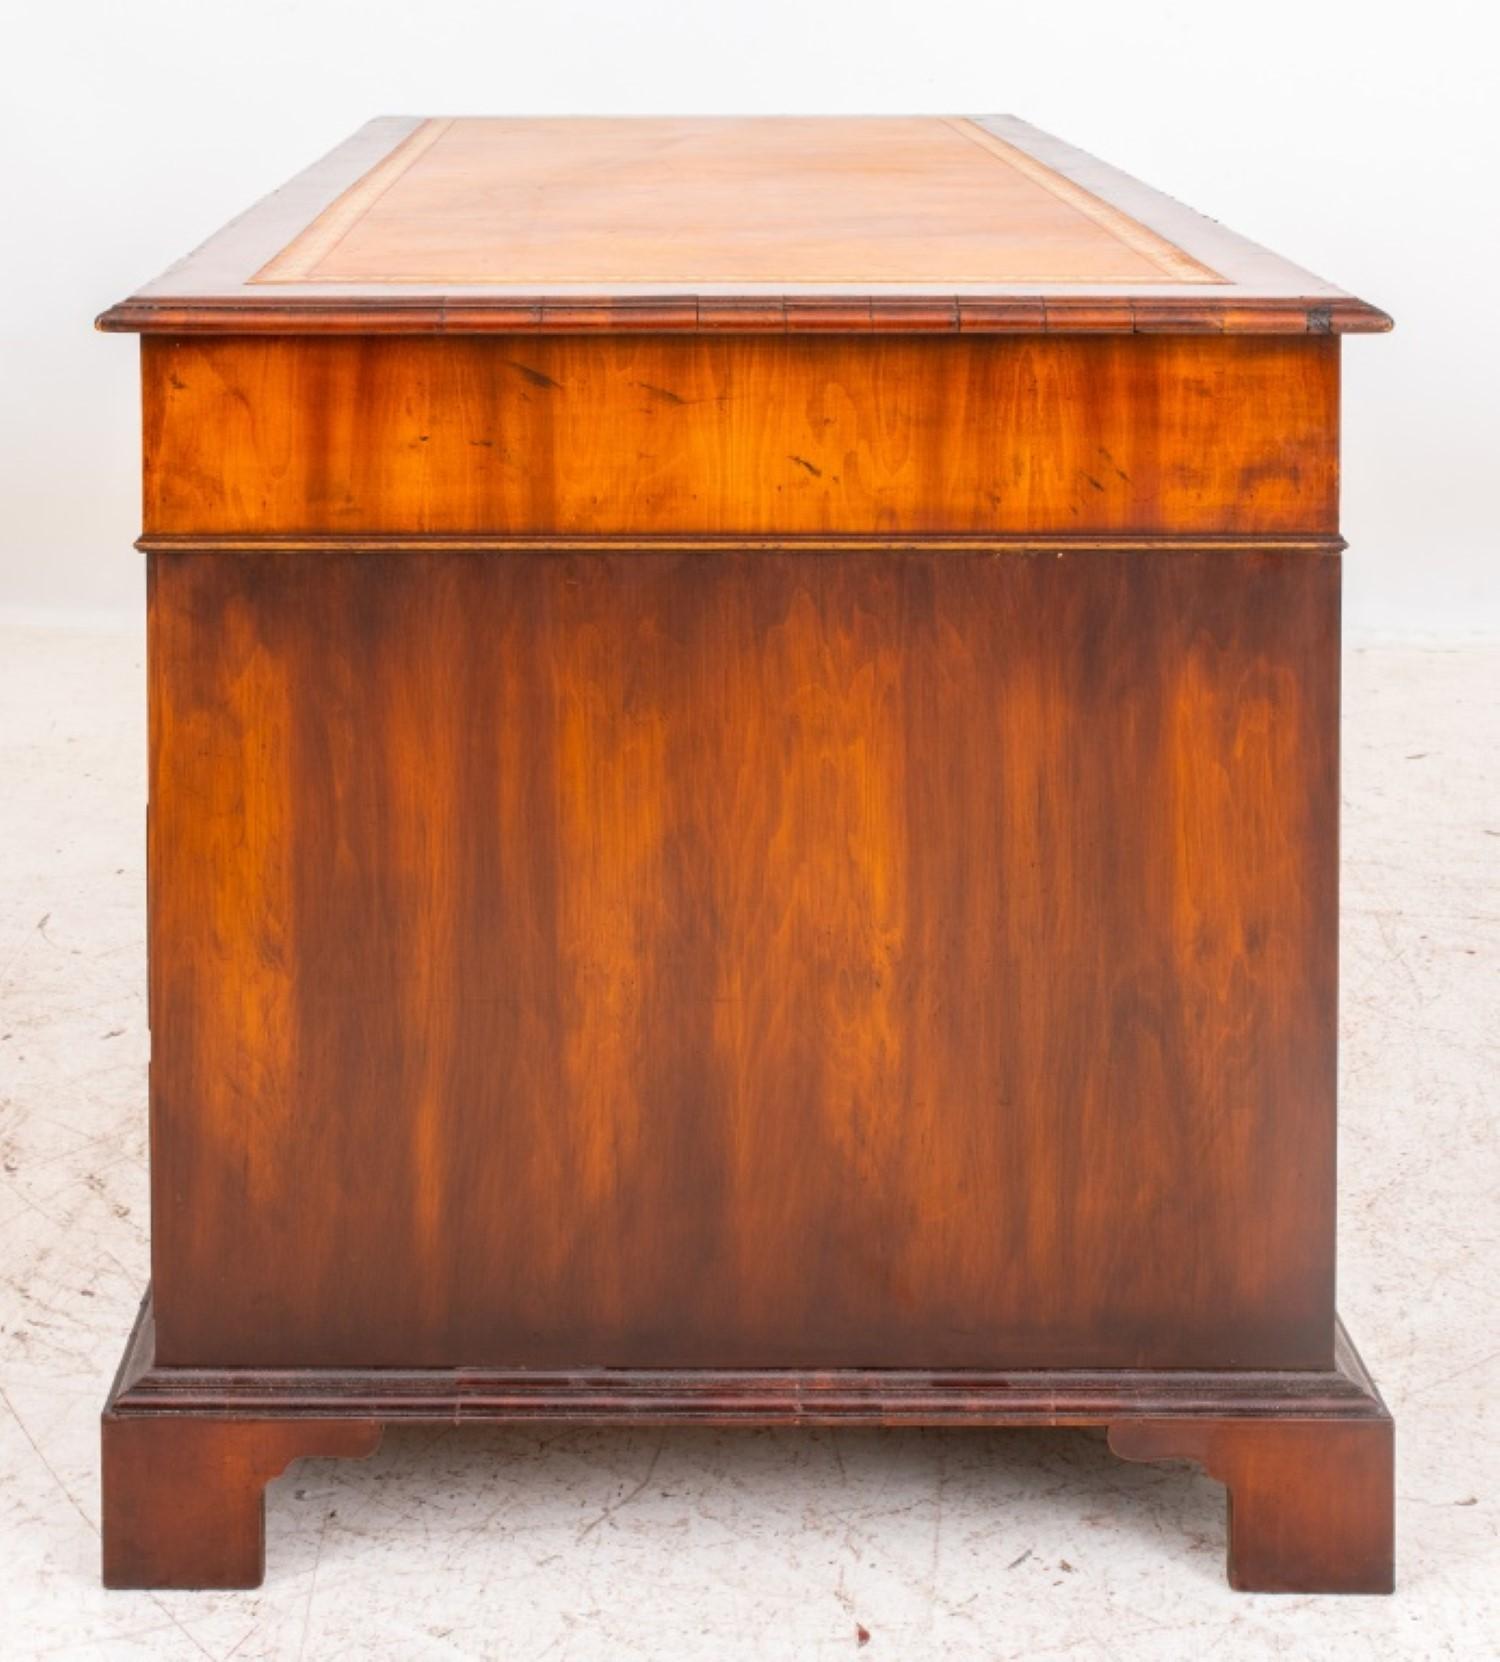 Mahagoni furnierter Schreibtisch im Stil von George III., rechteckig mit drei kurzen Schubladen über zwei Sockeln mit jeweils drei Schubladen auf Sockeln mit Klammerfüßen.

30 Zoll in der Höhe, 65 Zoll in der Breite und 30 Zoll in der Tiefe